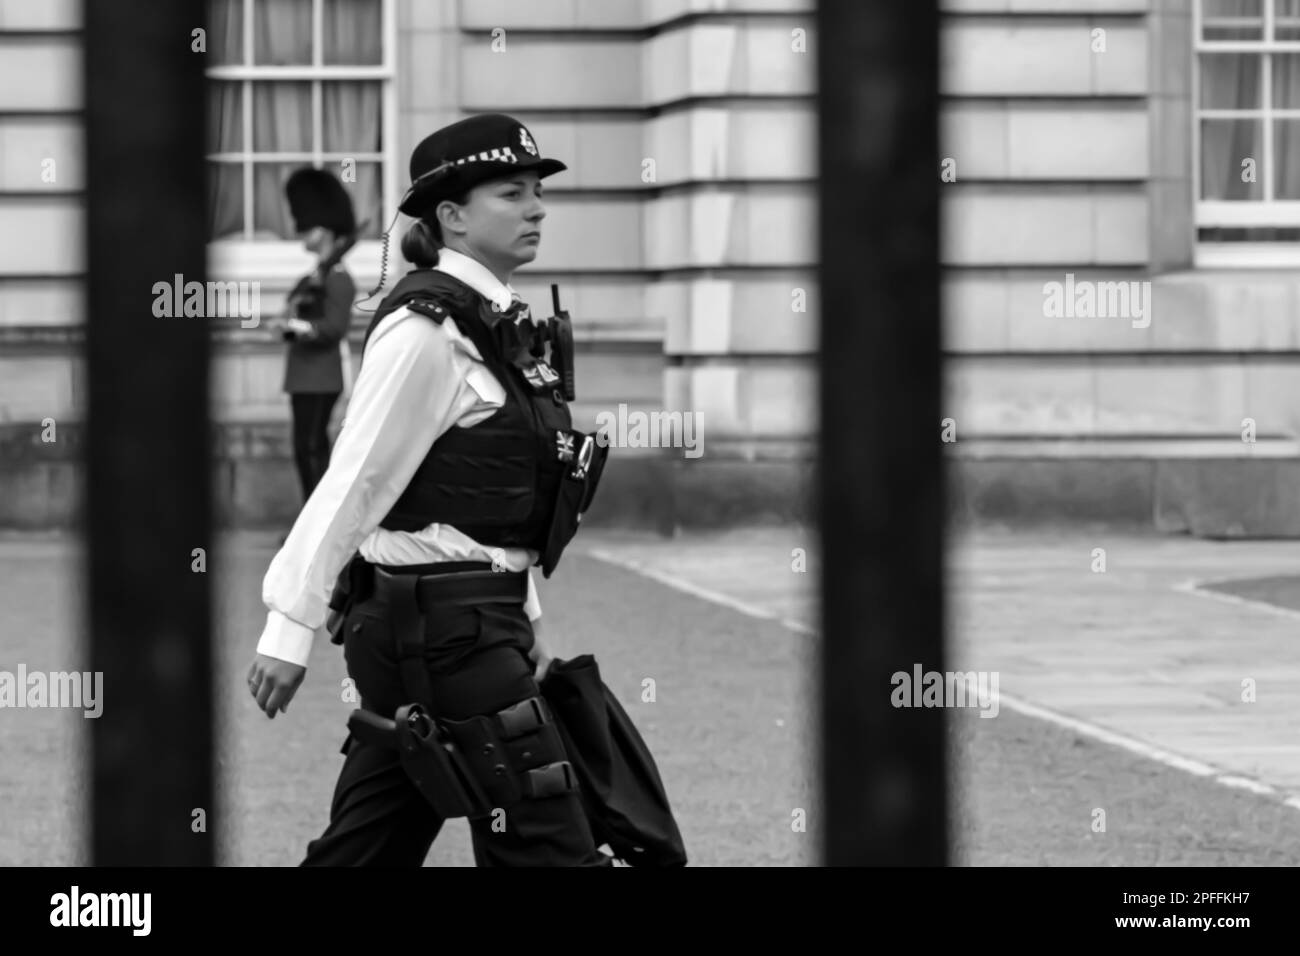 Londres, Royaume-Uni - 21 mai 2018 : vue d'une femme policier en face du Palais de Buckingham à Londres, Royaume-Uni, en noir et blanc Banque D'Images